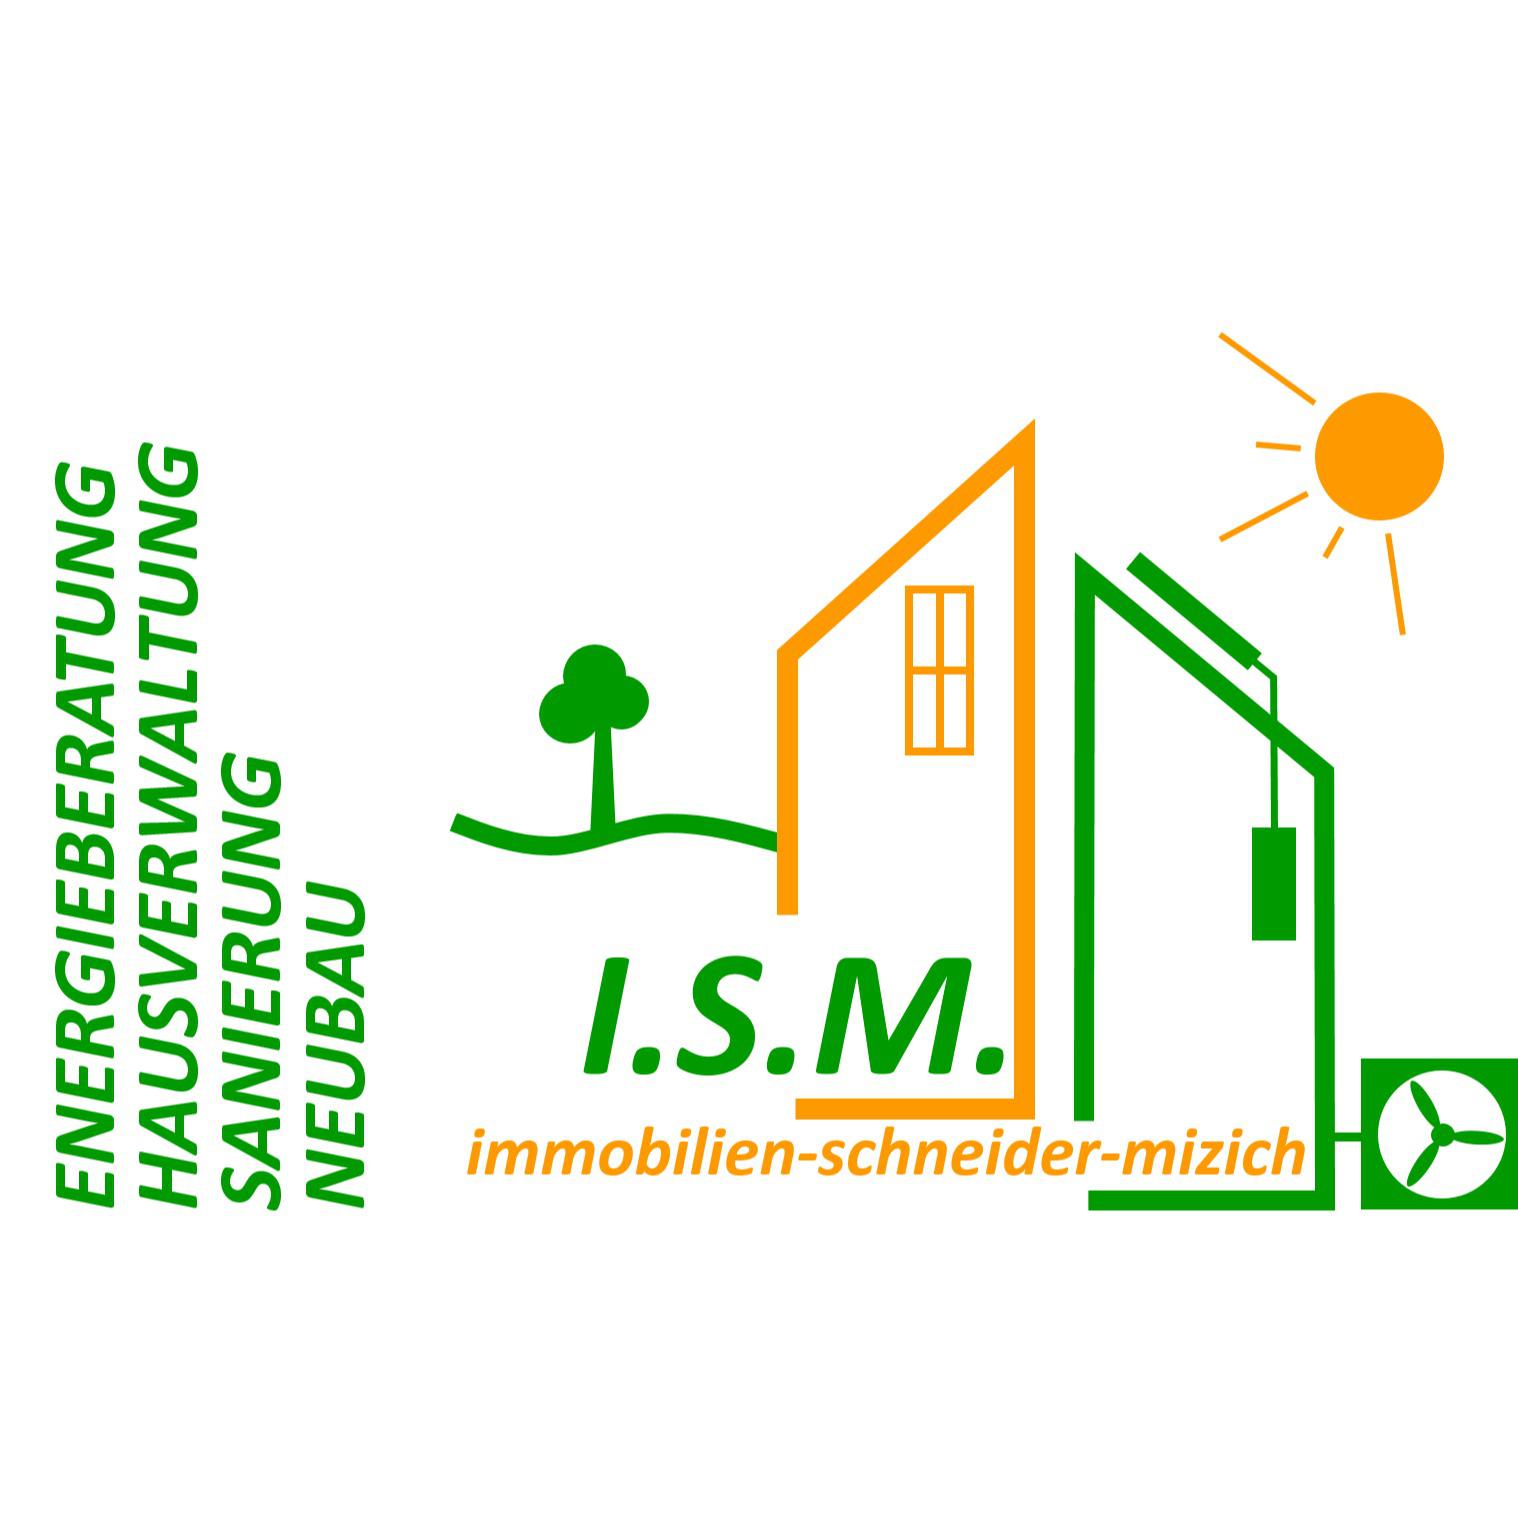 Immobilien-Schneider-Mizich GbR inh. Josef Schneider & Irina Mizich in Steinhagen in Westfalen - Logo